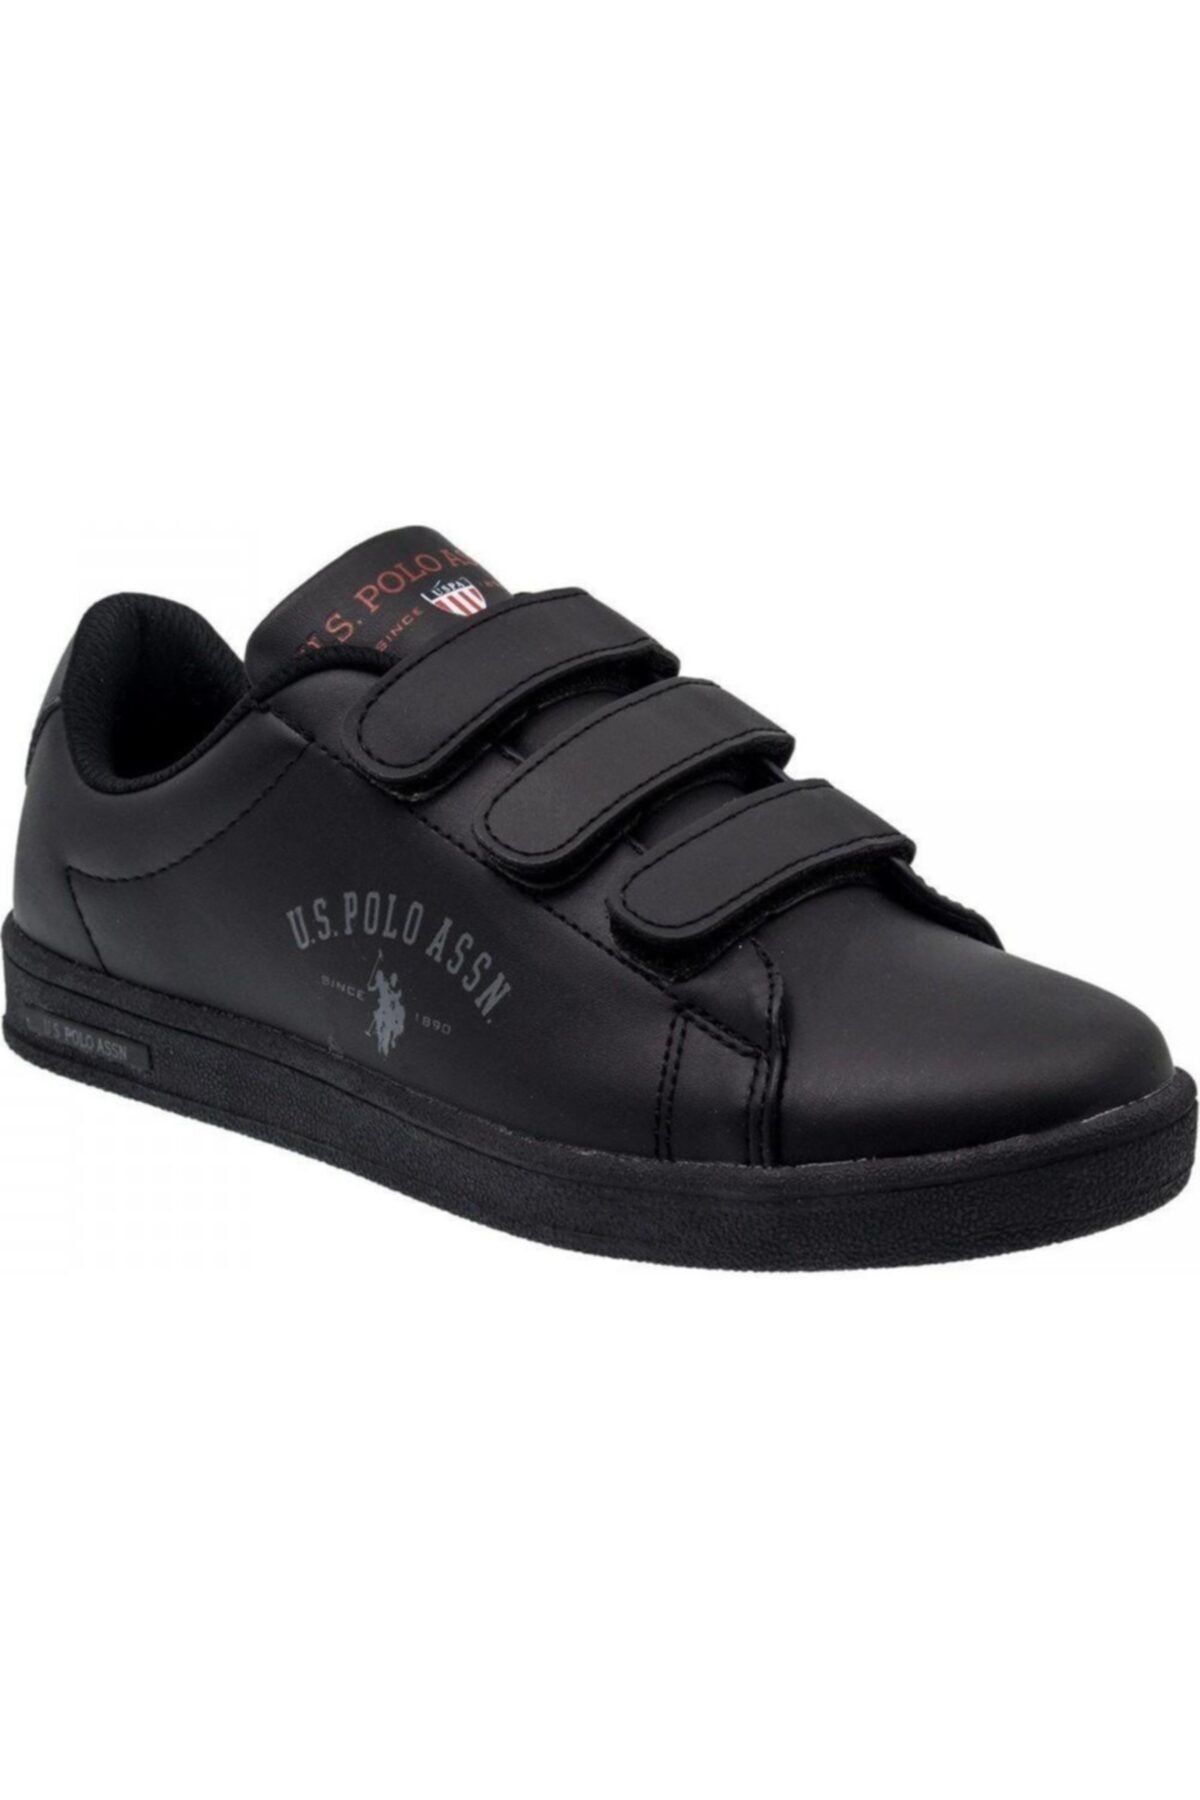 U.S. Polo Assn. Assn. Sınger Siyah Cırtlı Erkek-kız Çocuk Sneaker Spor Ayakkabı